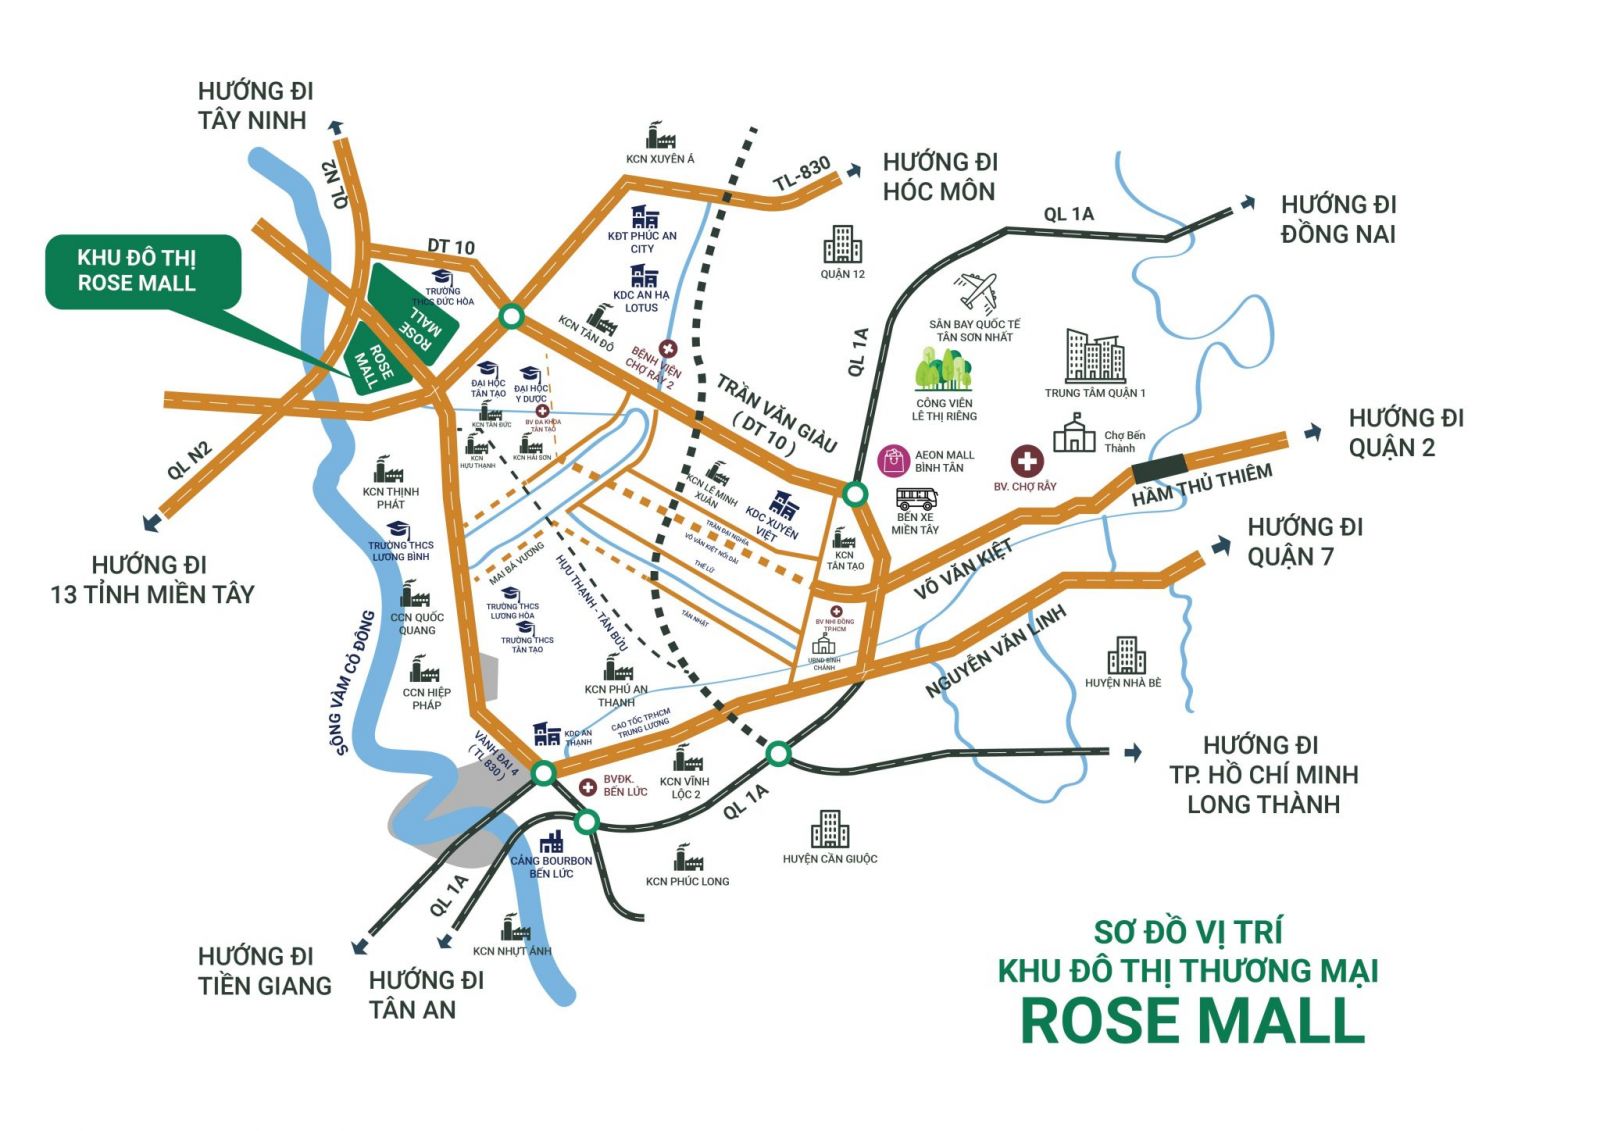 Mặc dù chưa được các cơ quan chức năng cho phép nhưng trong các thông tin quảng cáo đều tự ý đặt tên dự án này là Rose Mall